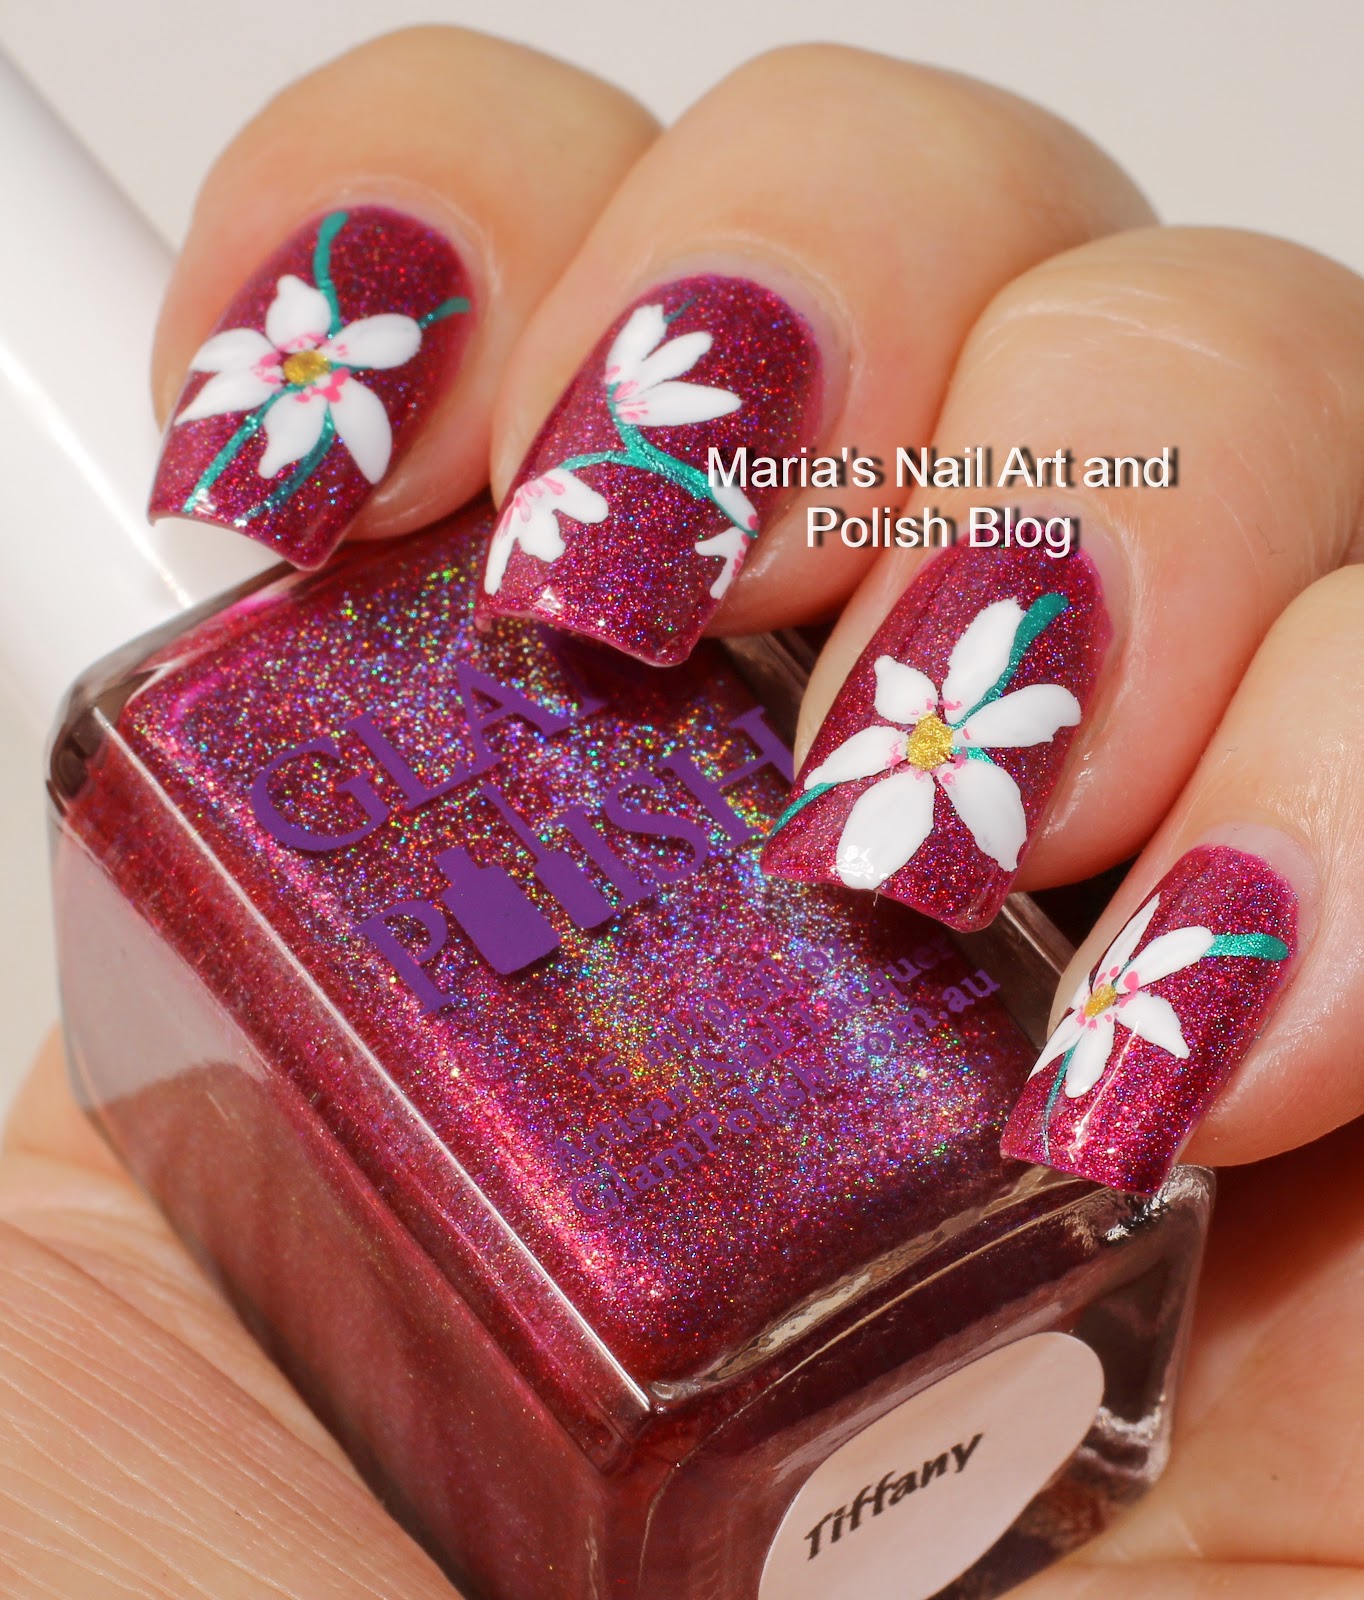 Marias Nail Art and Polish Blog: Large white floral nail art for Tiffany